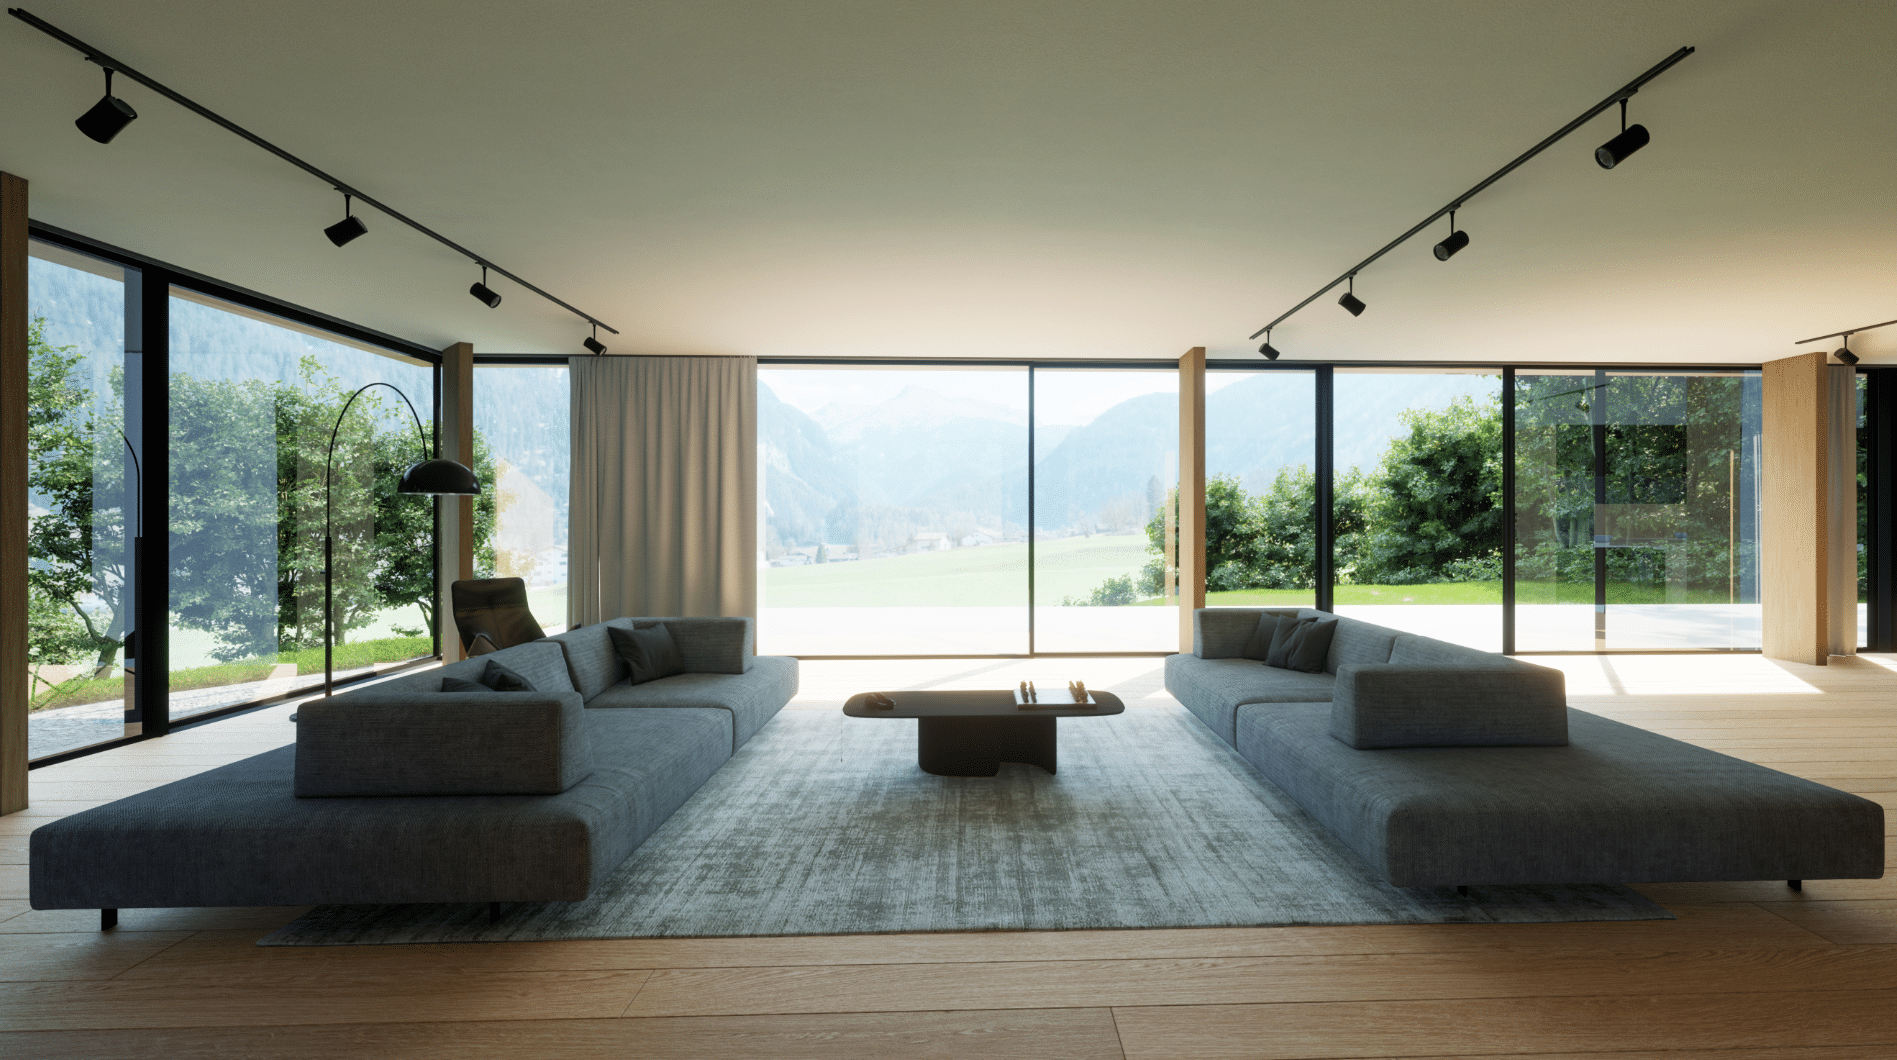 Solarlux zeigt ein großes Wohnzimmer mit zwei Sitzlandschaften und einem freiliegendem Teppich auf einem Holzboden und großen Glasfronten und einer Glasschiebetür mit Zugang zur Terrasse.